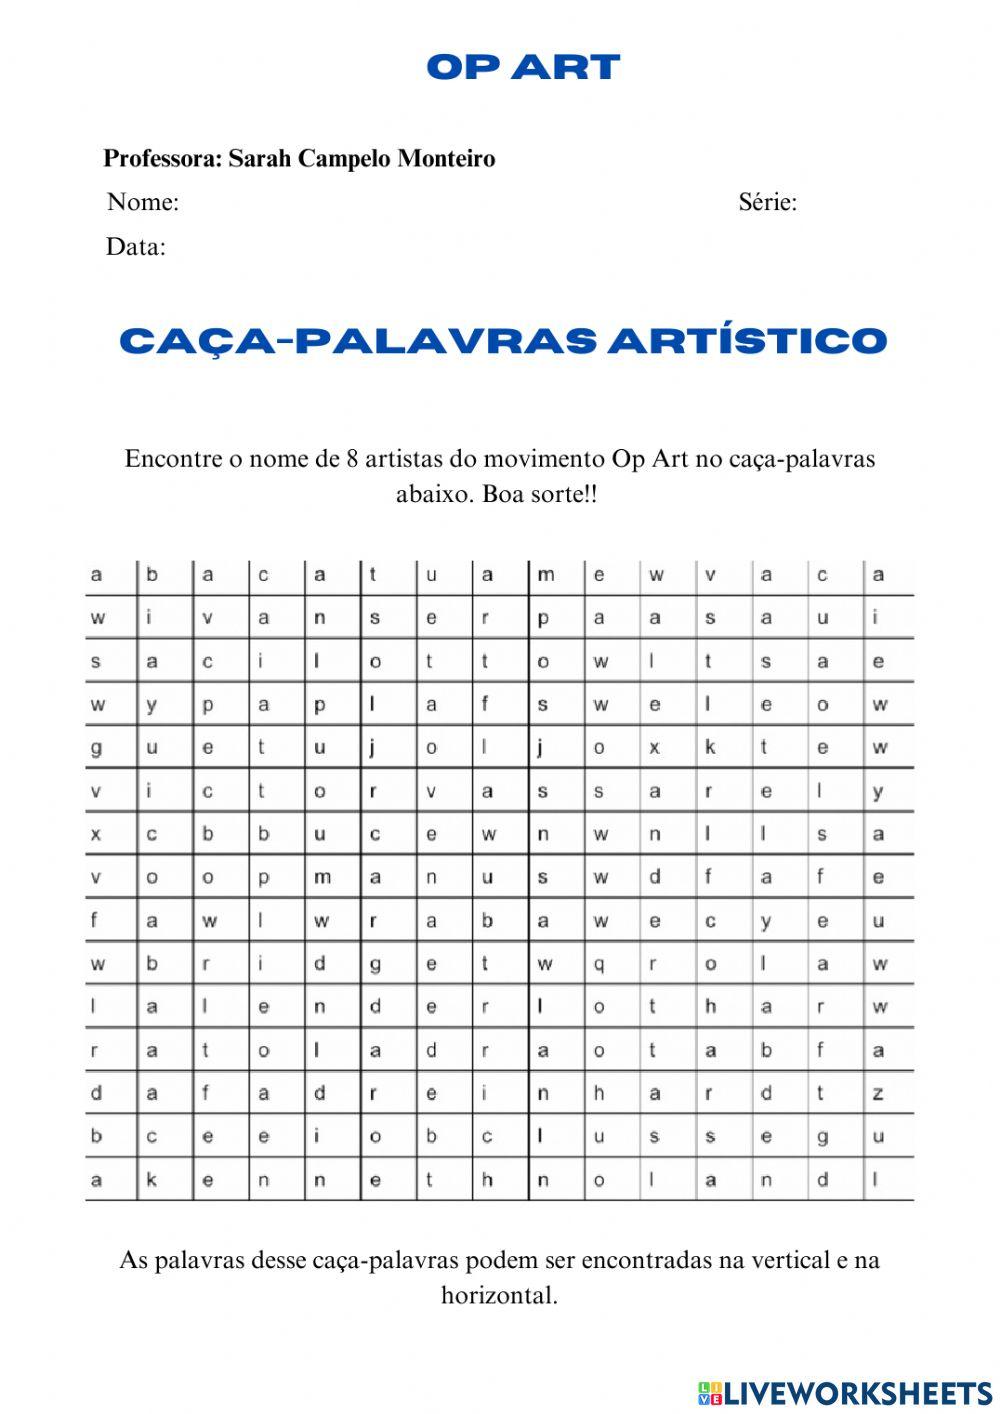 Op Art - CAÇA-PALAVRAS ARTÍSTICO